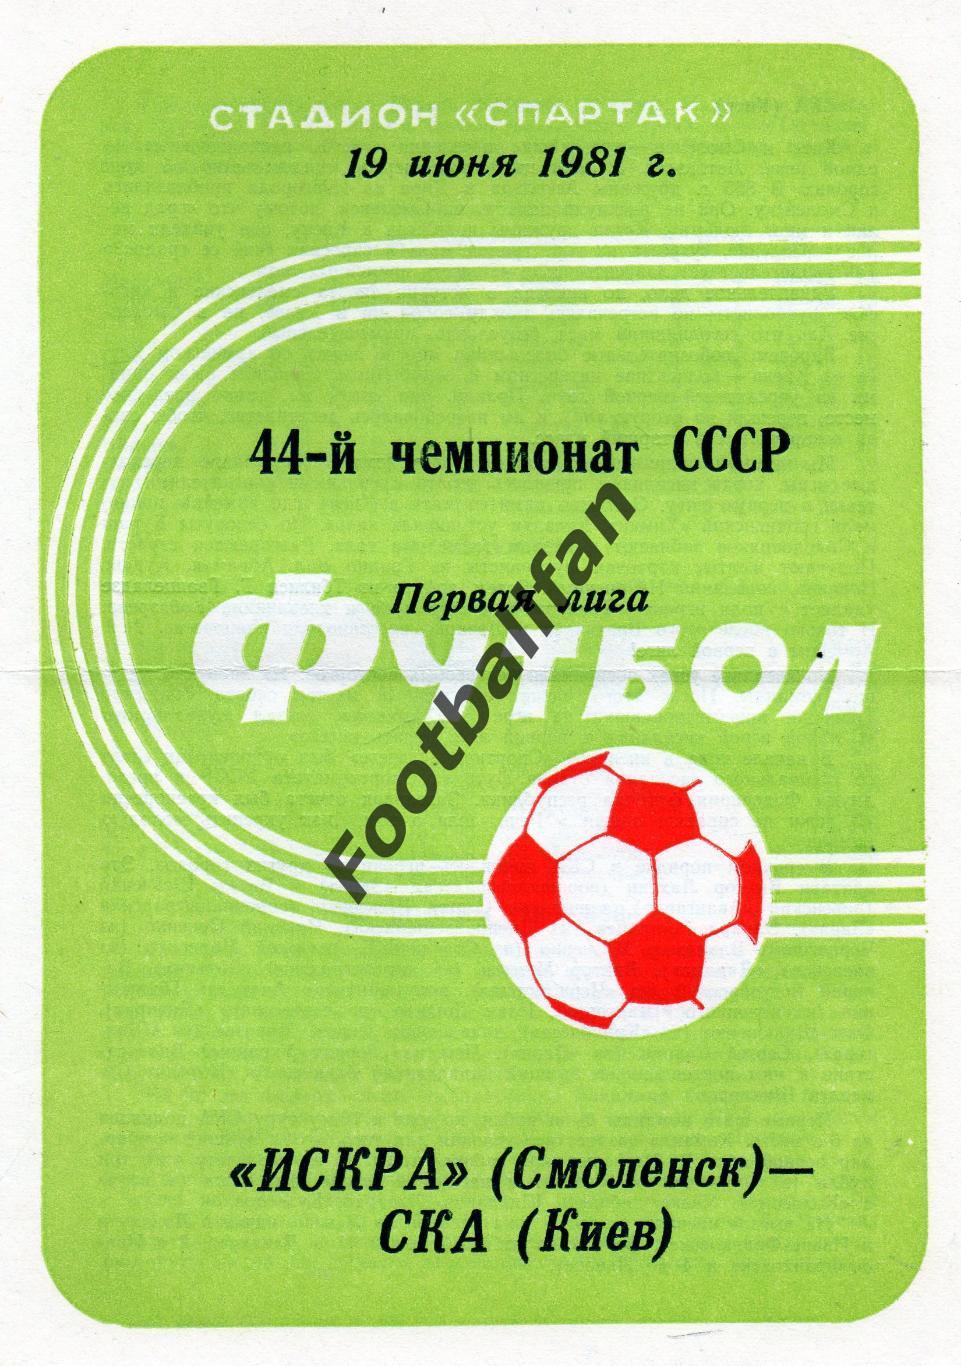 Искра Смоленск - СКА Киев 19.06.1981